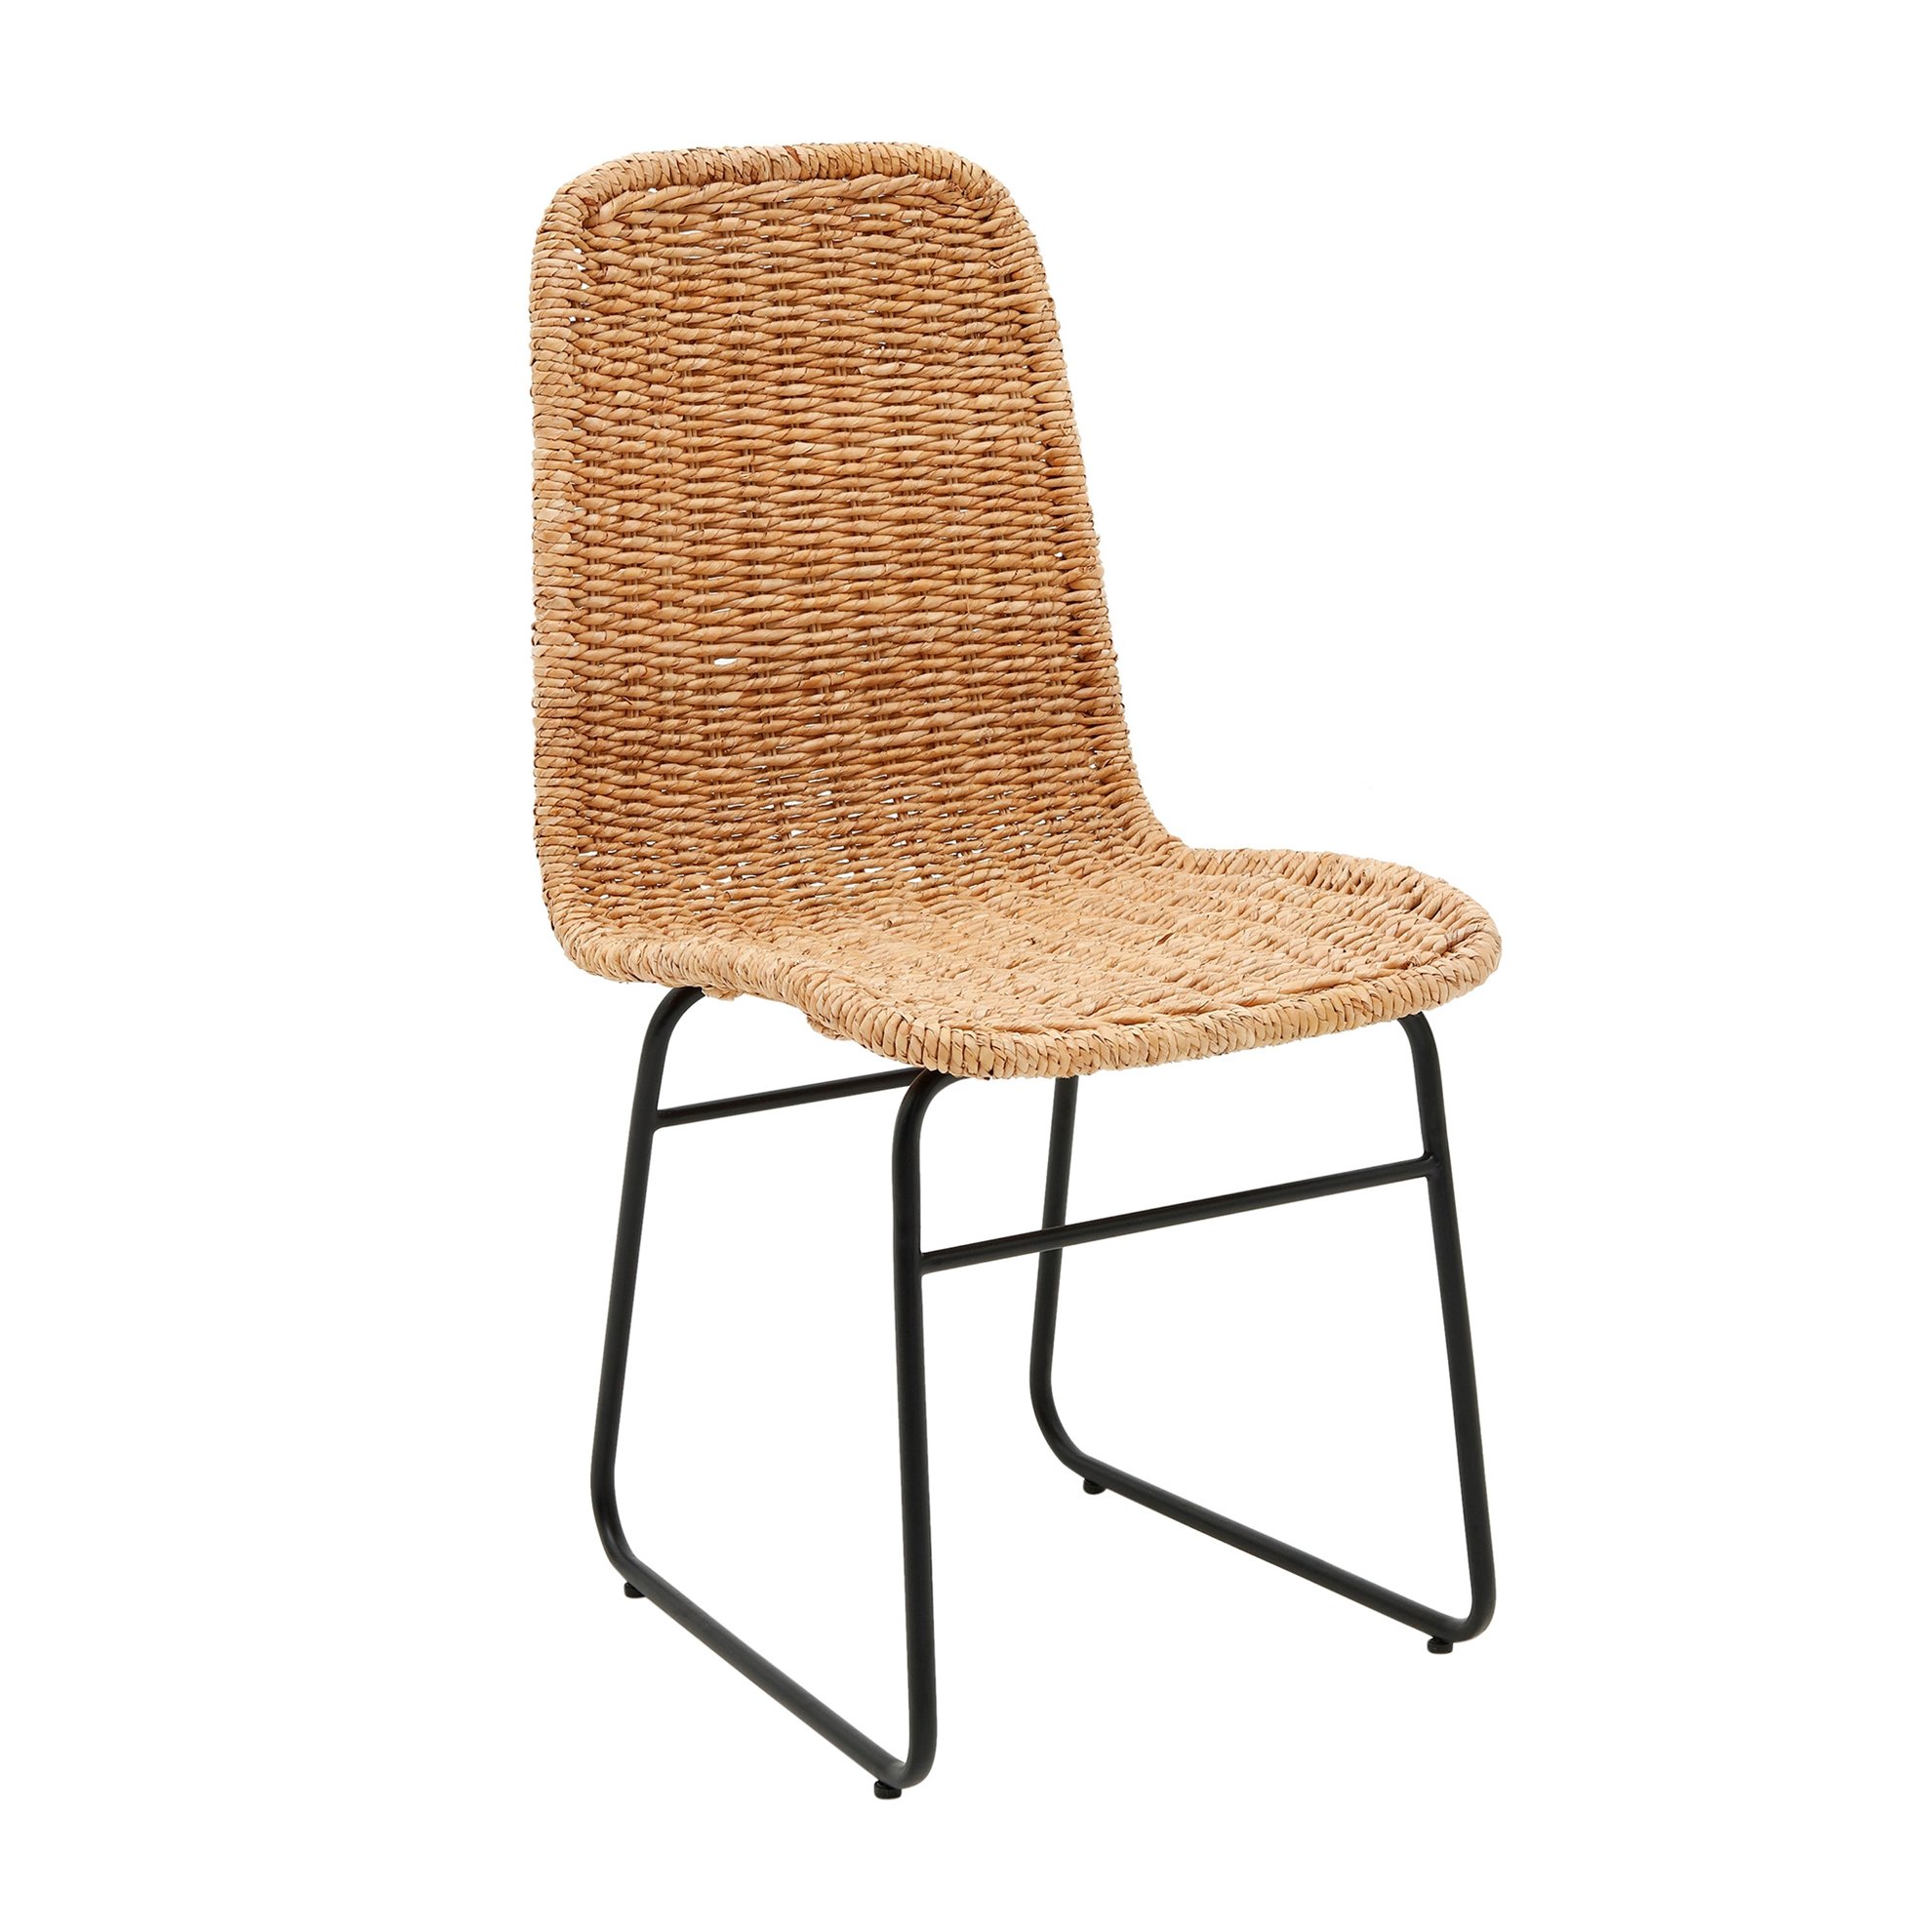 Hasır Sandalye (55x45x85cm)